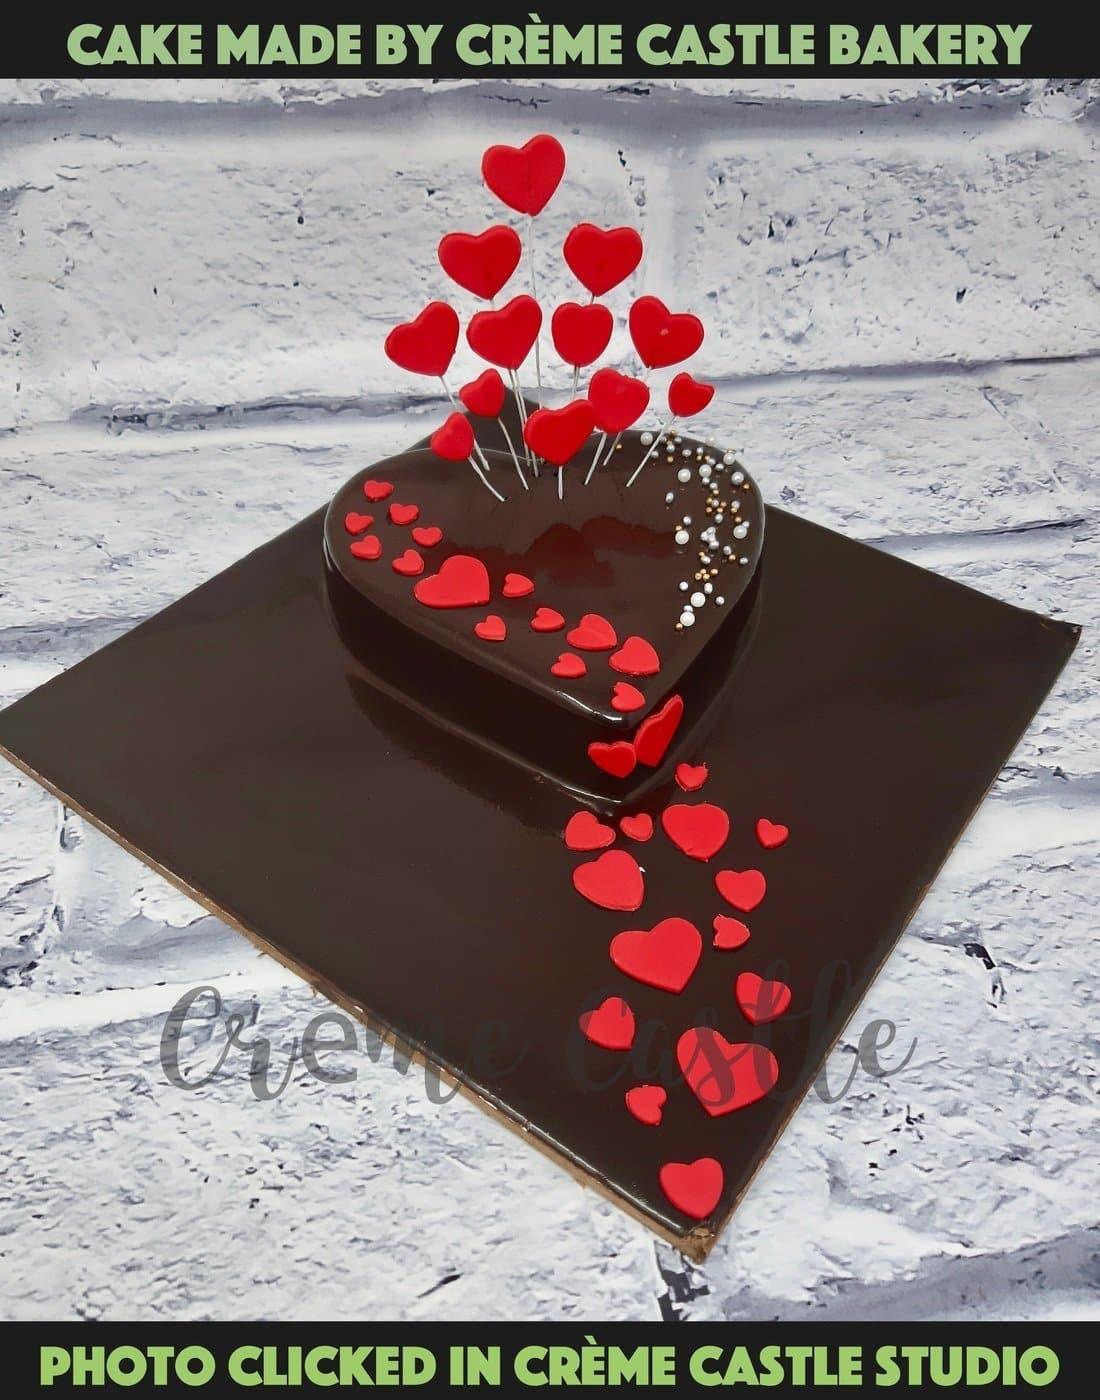 Order Half Kg Red velvet heart cake at ₹849 Online From Unrealgift